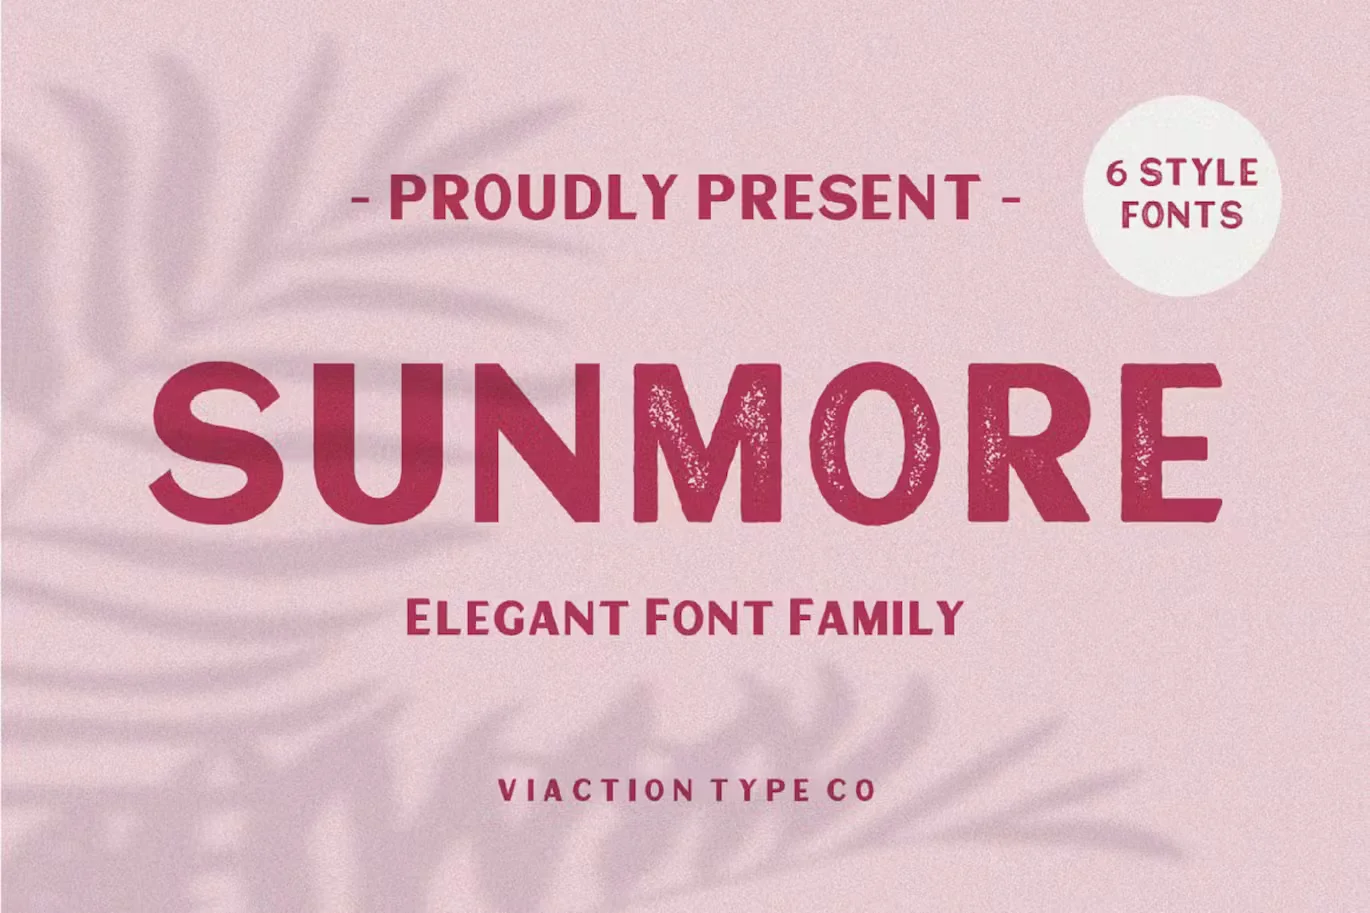 Sunmore Elegant Font